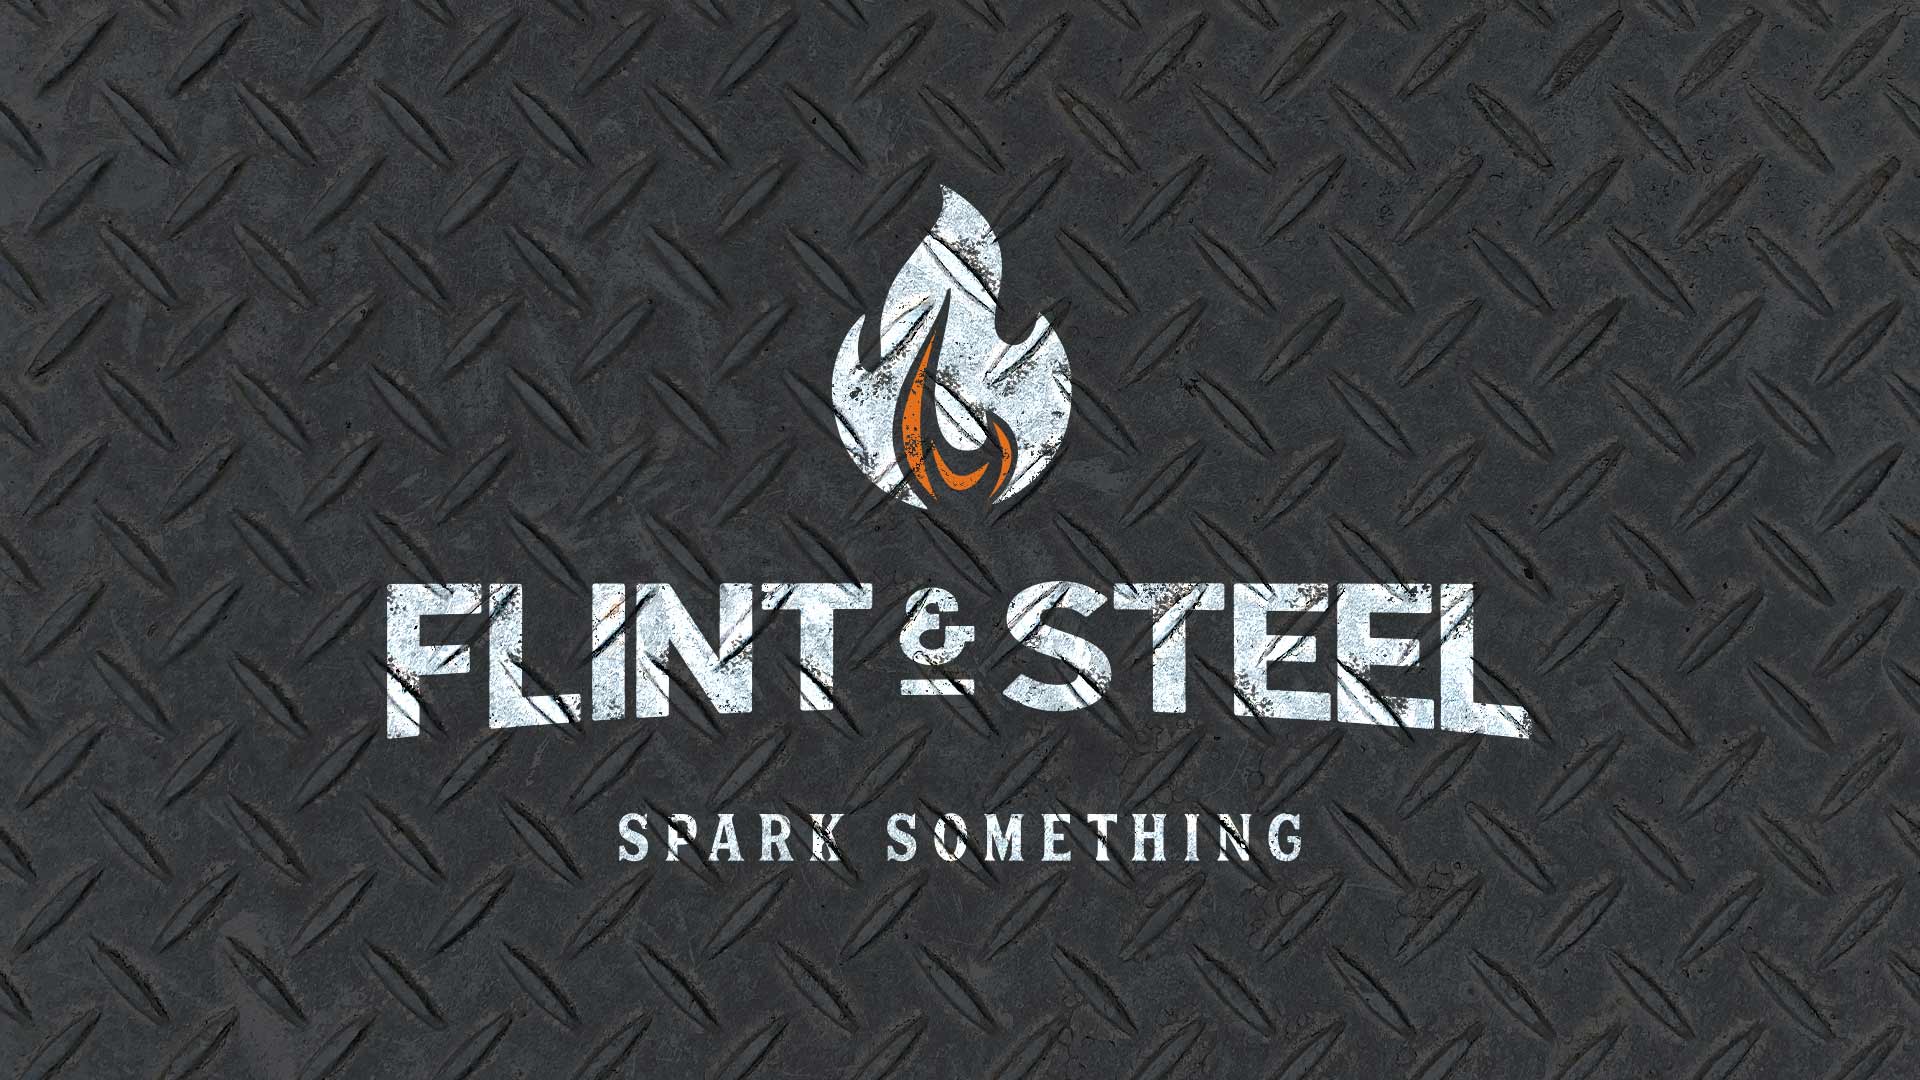 Flint & Steel (Spark Something)